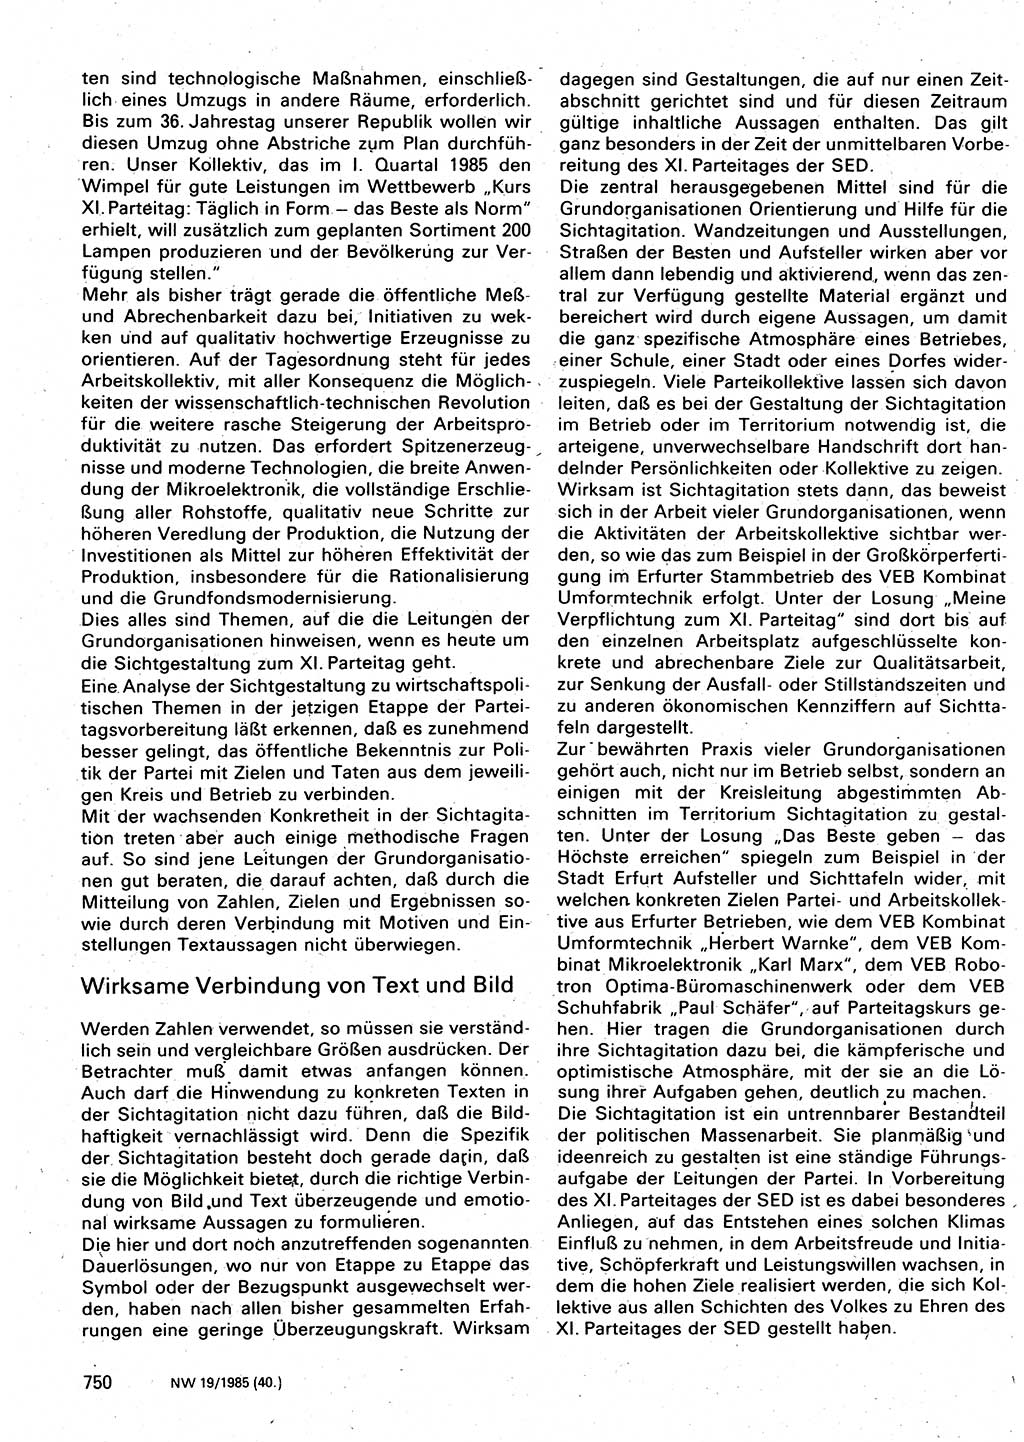 Neuer Weg (NW), Organ des Zentralkomitees (ZK) der SED (Sozialistische Einheitspartei Deutschlands) für Fragen des Parteilebens, 40. Jahrgang [Deutsche Demokratische Republik (DDR)] 1985, Seite 750 (NW ZK SED DDR 1985, S. 750)